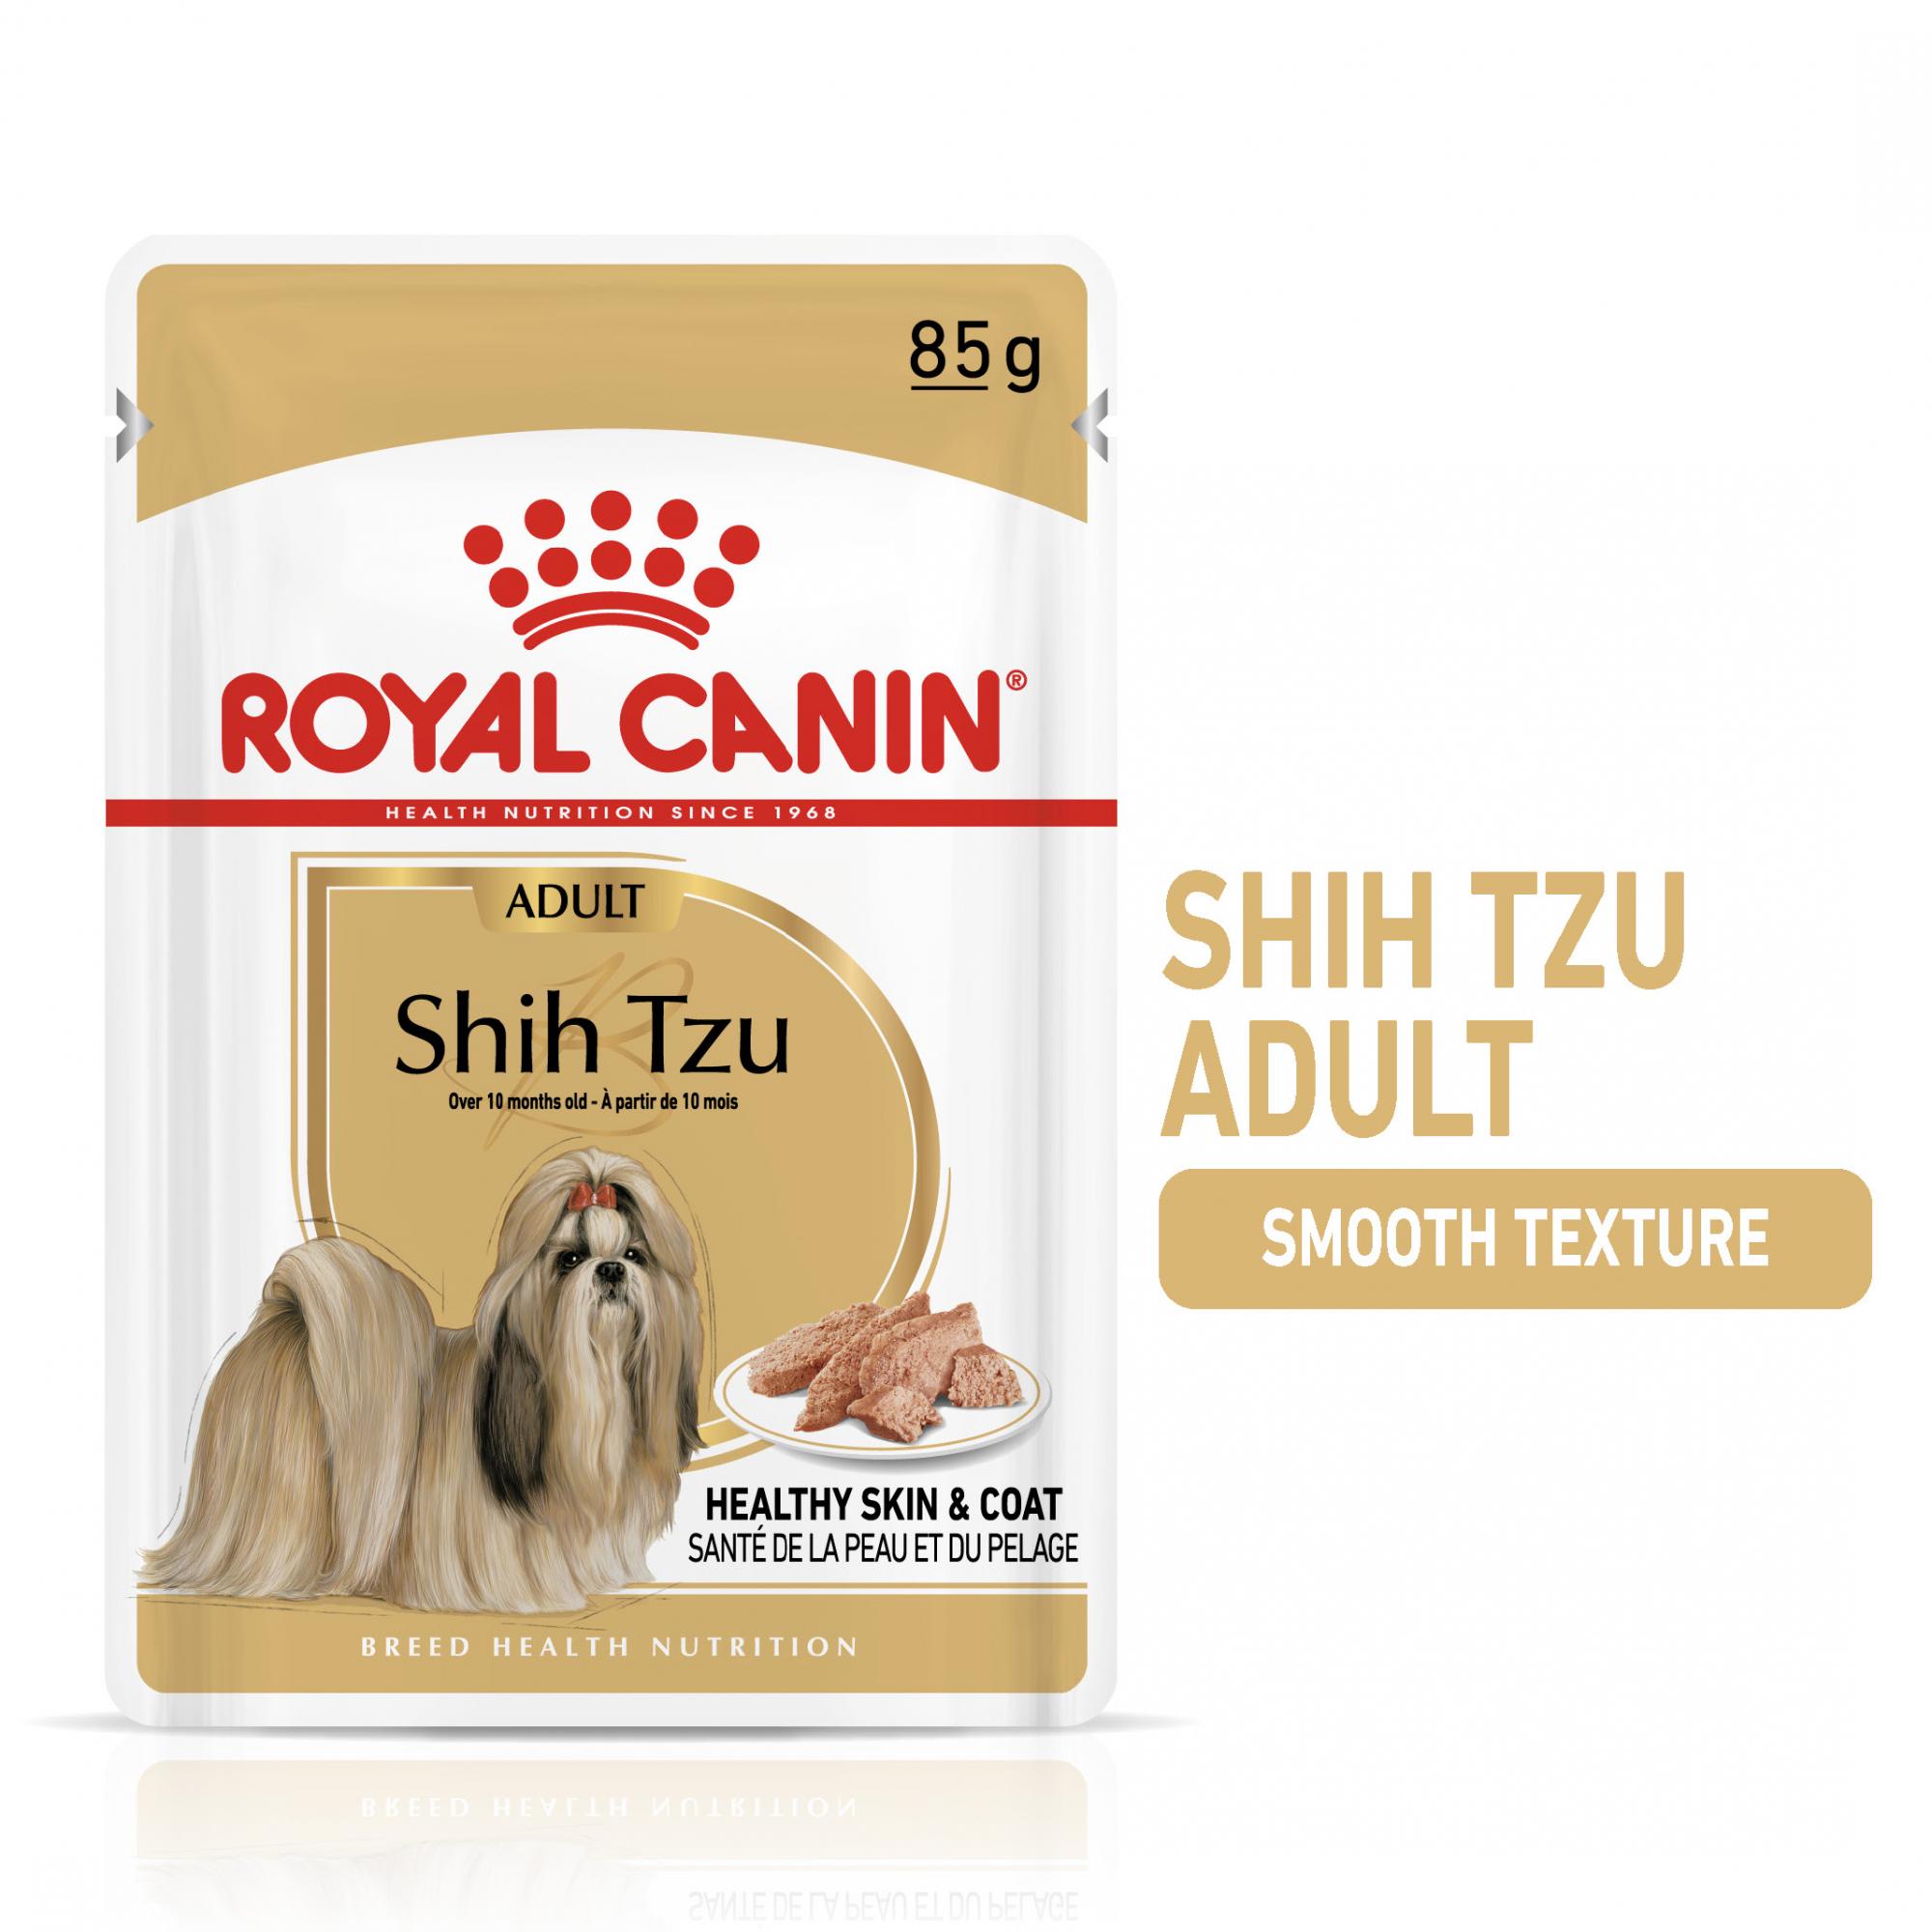 ROYAL CANIN® Shih Tzu Adult Dog Food in Loaf VioVet.co.uk